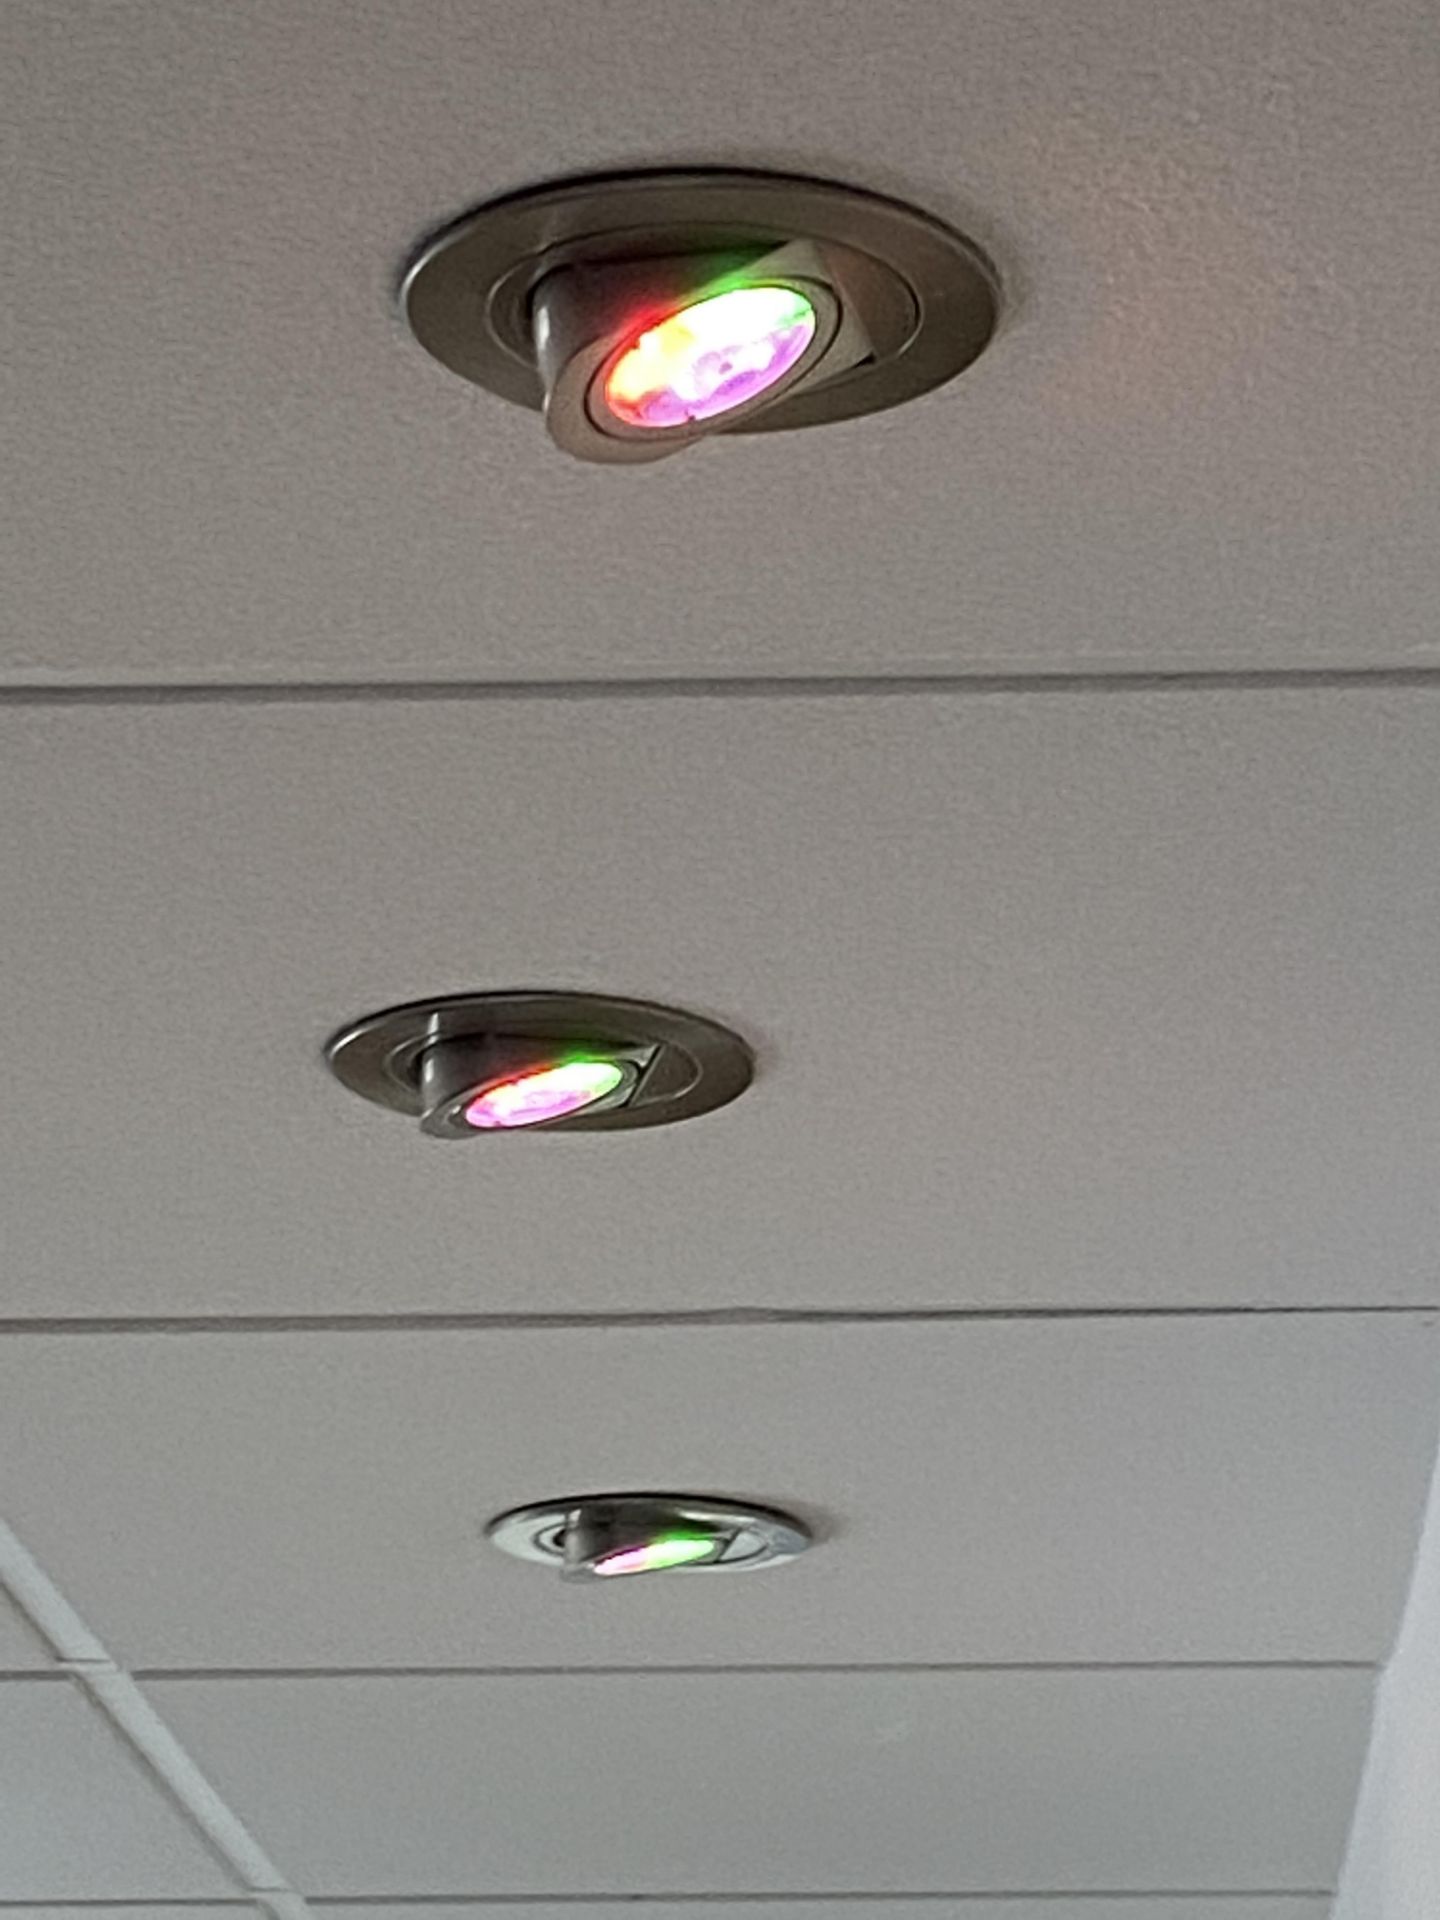 10 Led Adjustable Ceiling Lights. - Image 2 of 2